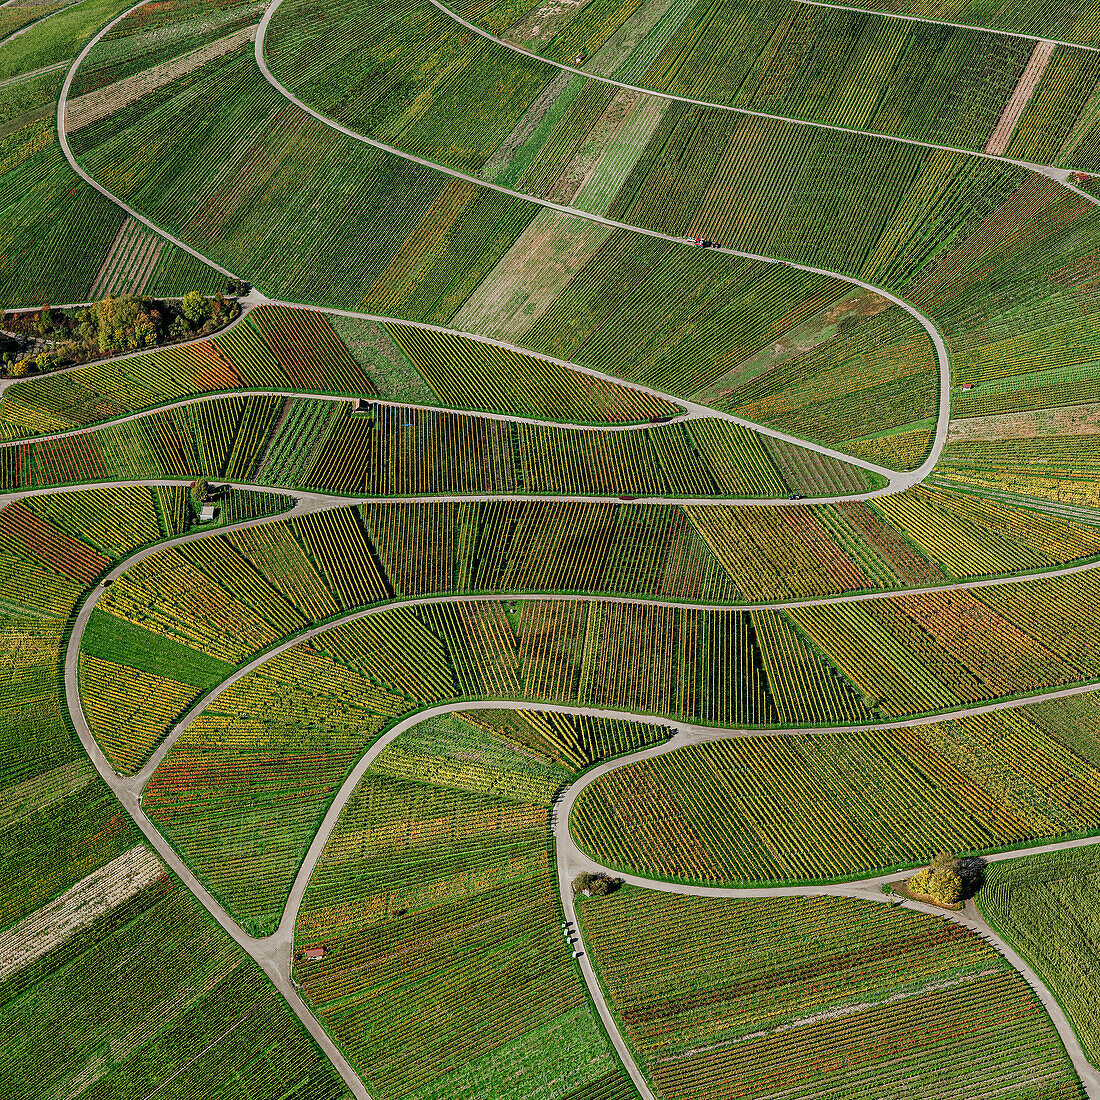 Luftaufnahme grüner Weinbergspflanzen, die ein kurvenreiches Landschaftsmuster bilden, Beutelsbach, Deutschland